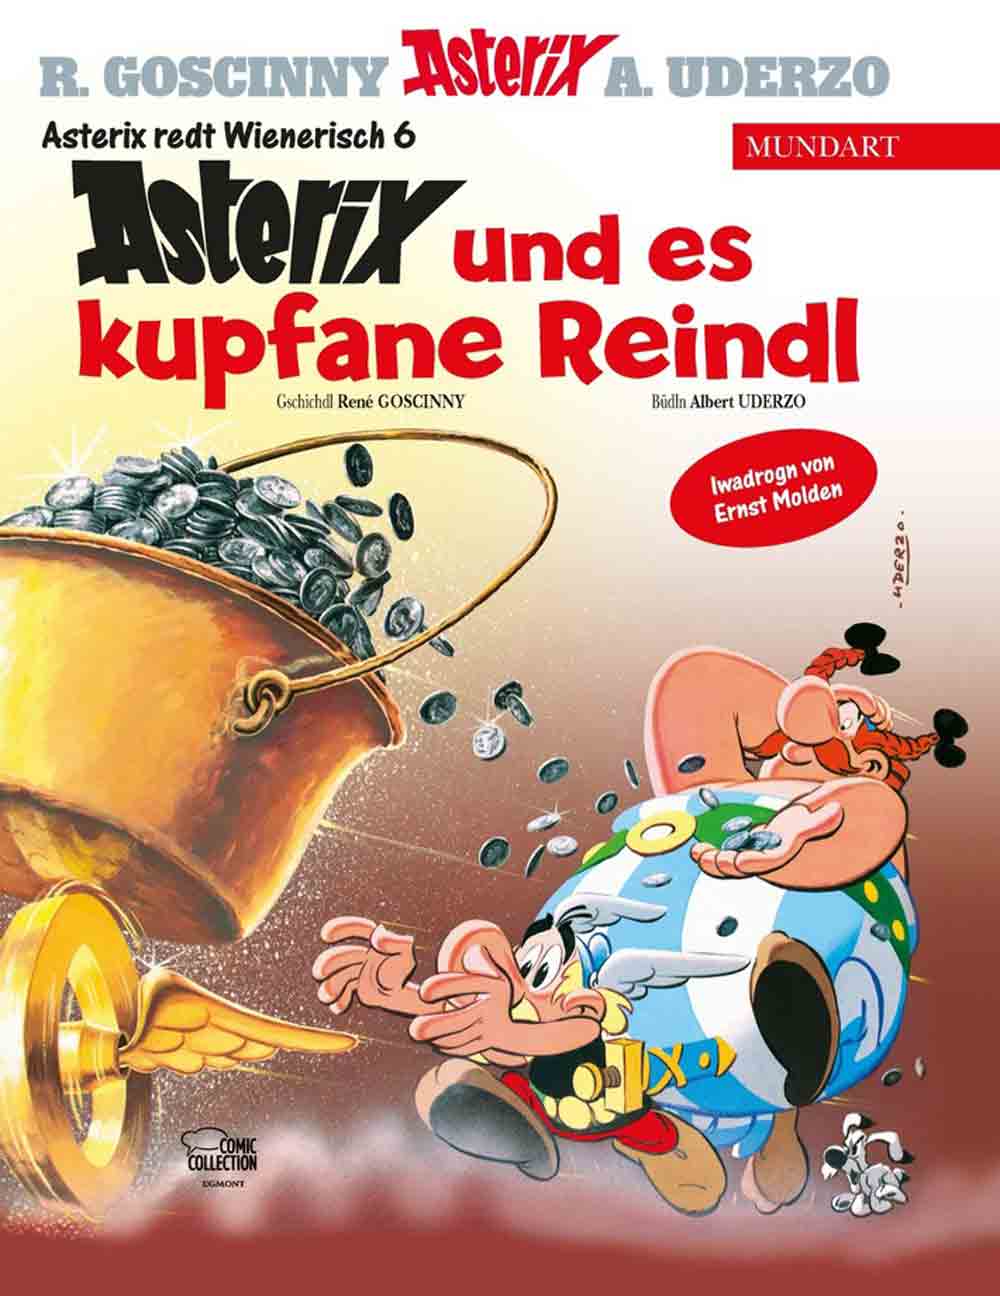 Asterix kehrt zurück nach Wien